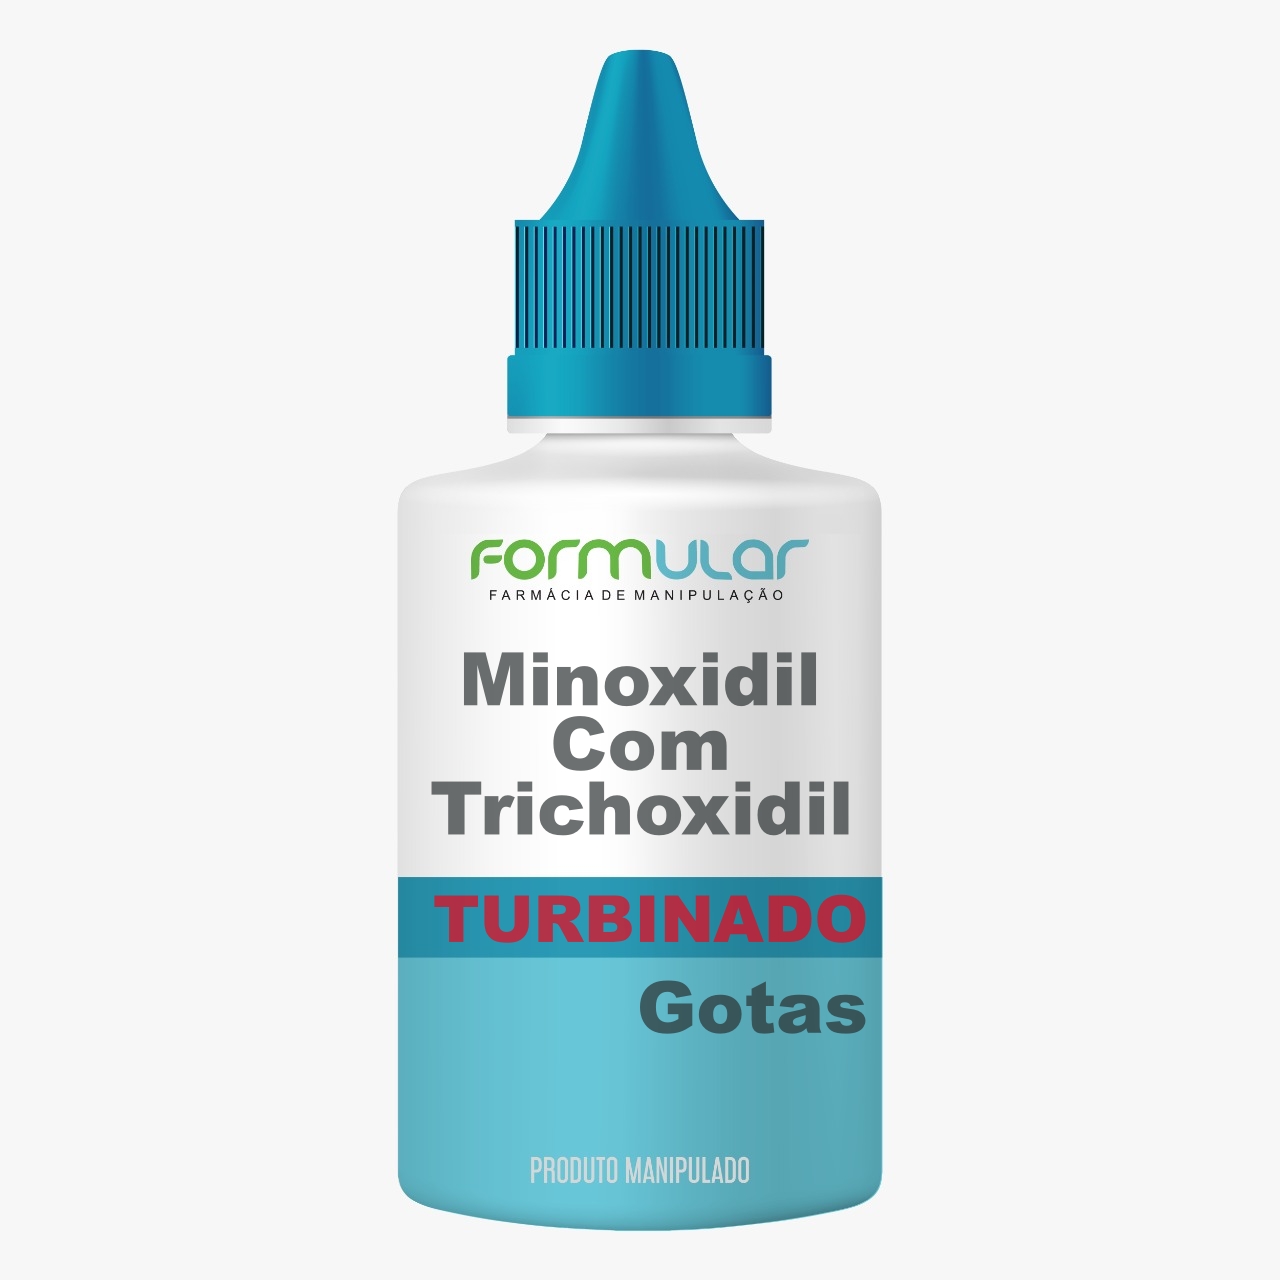 Minoxidil com Trichoxidil  TURBINADO Loção Capilar - Estimula o crescimento dos fios